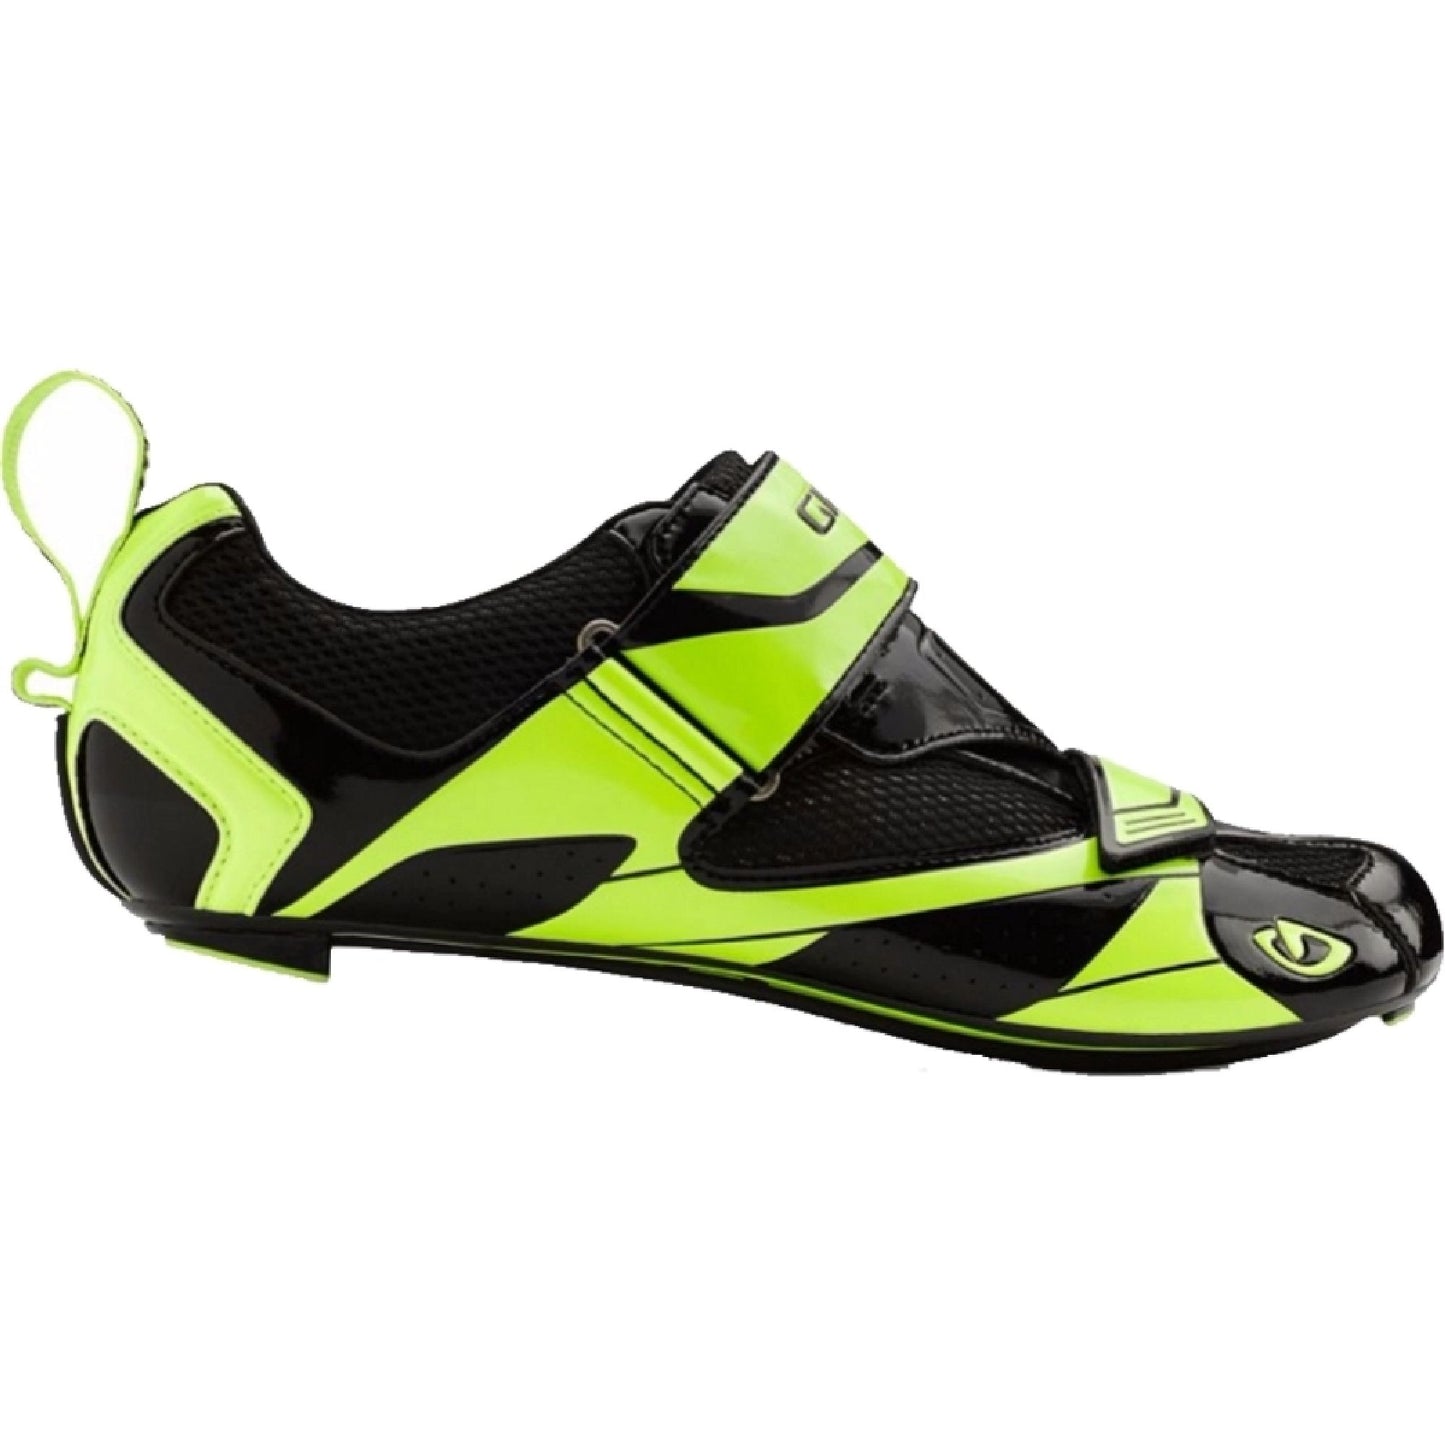 Giro Mele Tri Shoe Bike Shoes